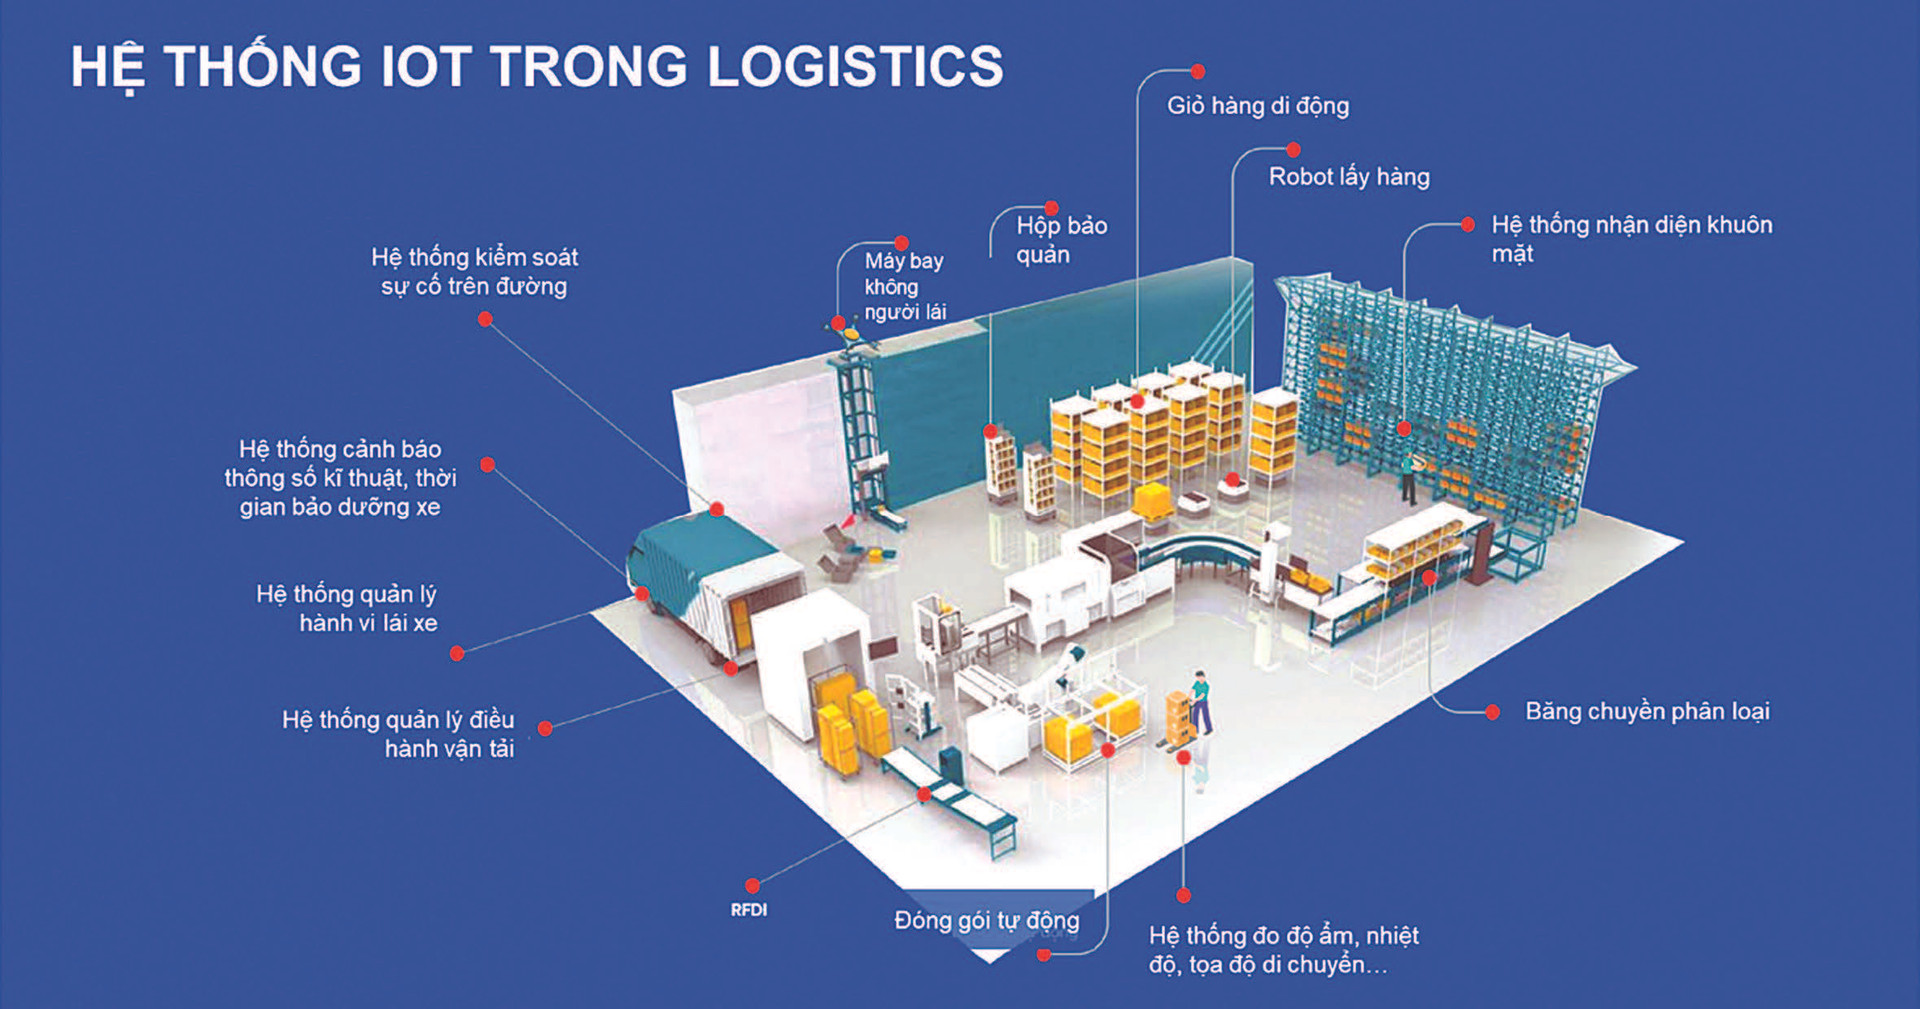 Chuyển đổi số trong ngành dịch vụ logistics Việt Nam Cơ hội tạo đột phá  hiện trạng và thách thức